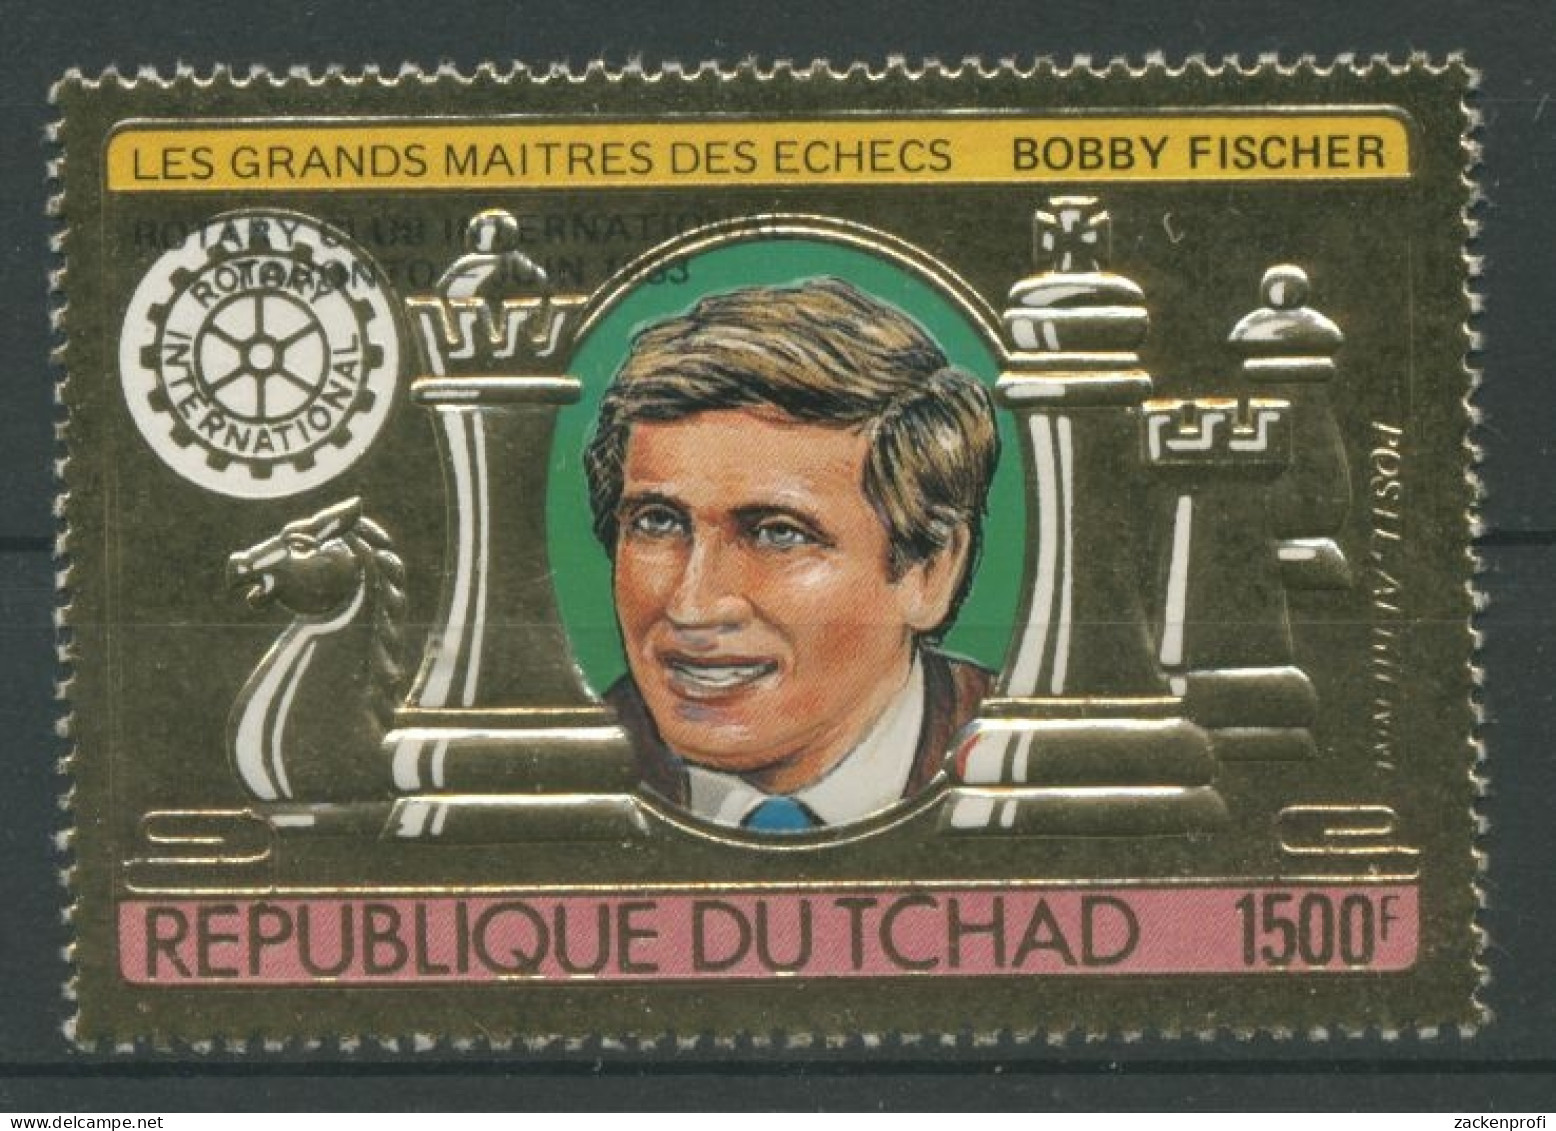 Tschad 1982 Schachgroßmeister Bobby Fischer 951 A Postfrisch - Chad (1960-...)